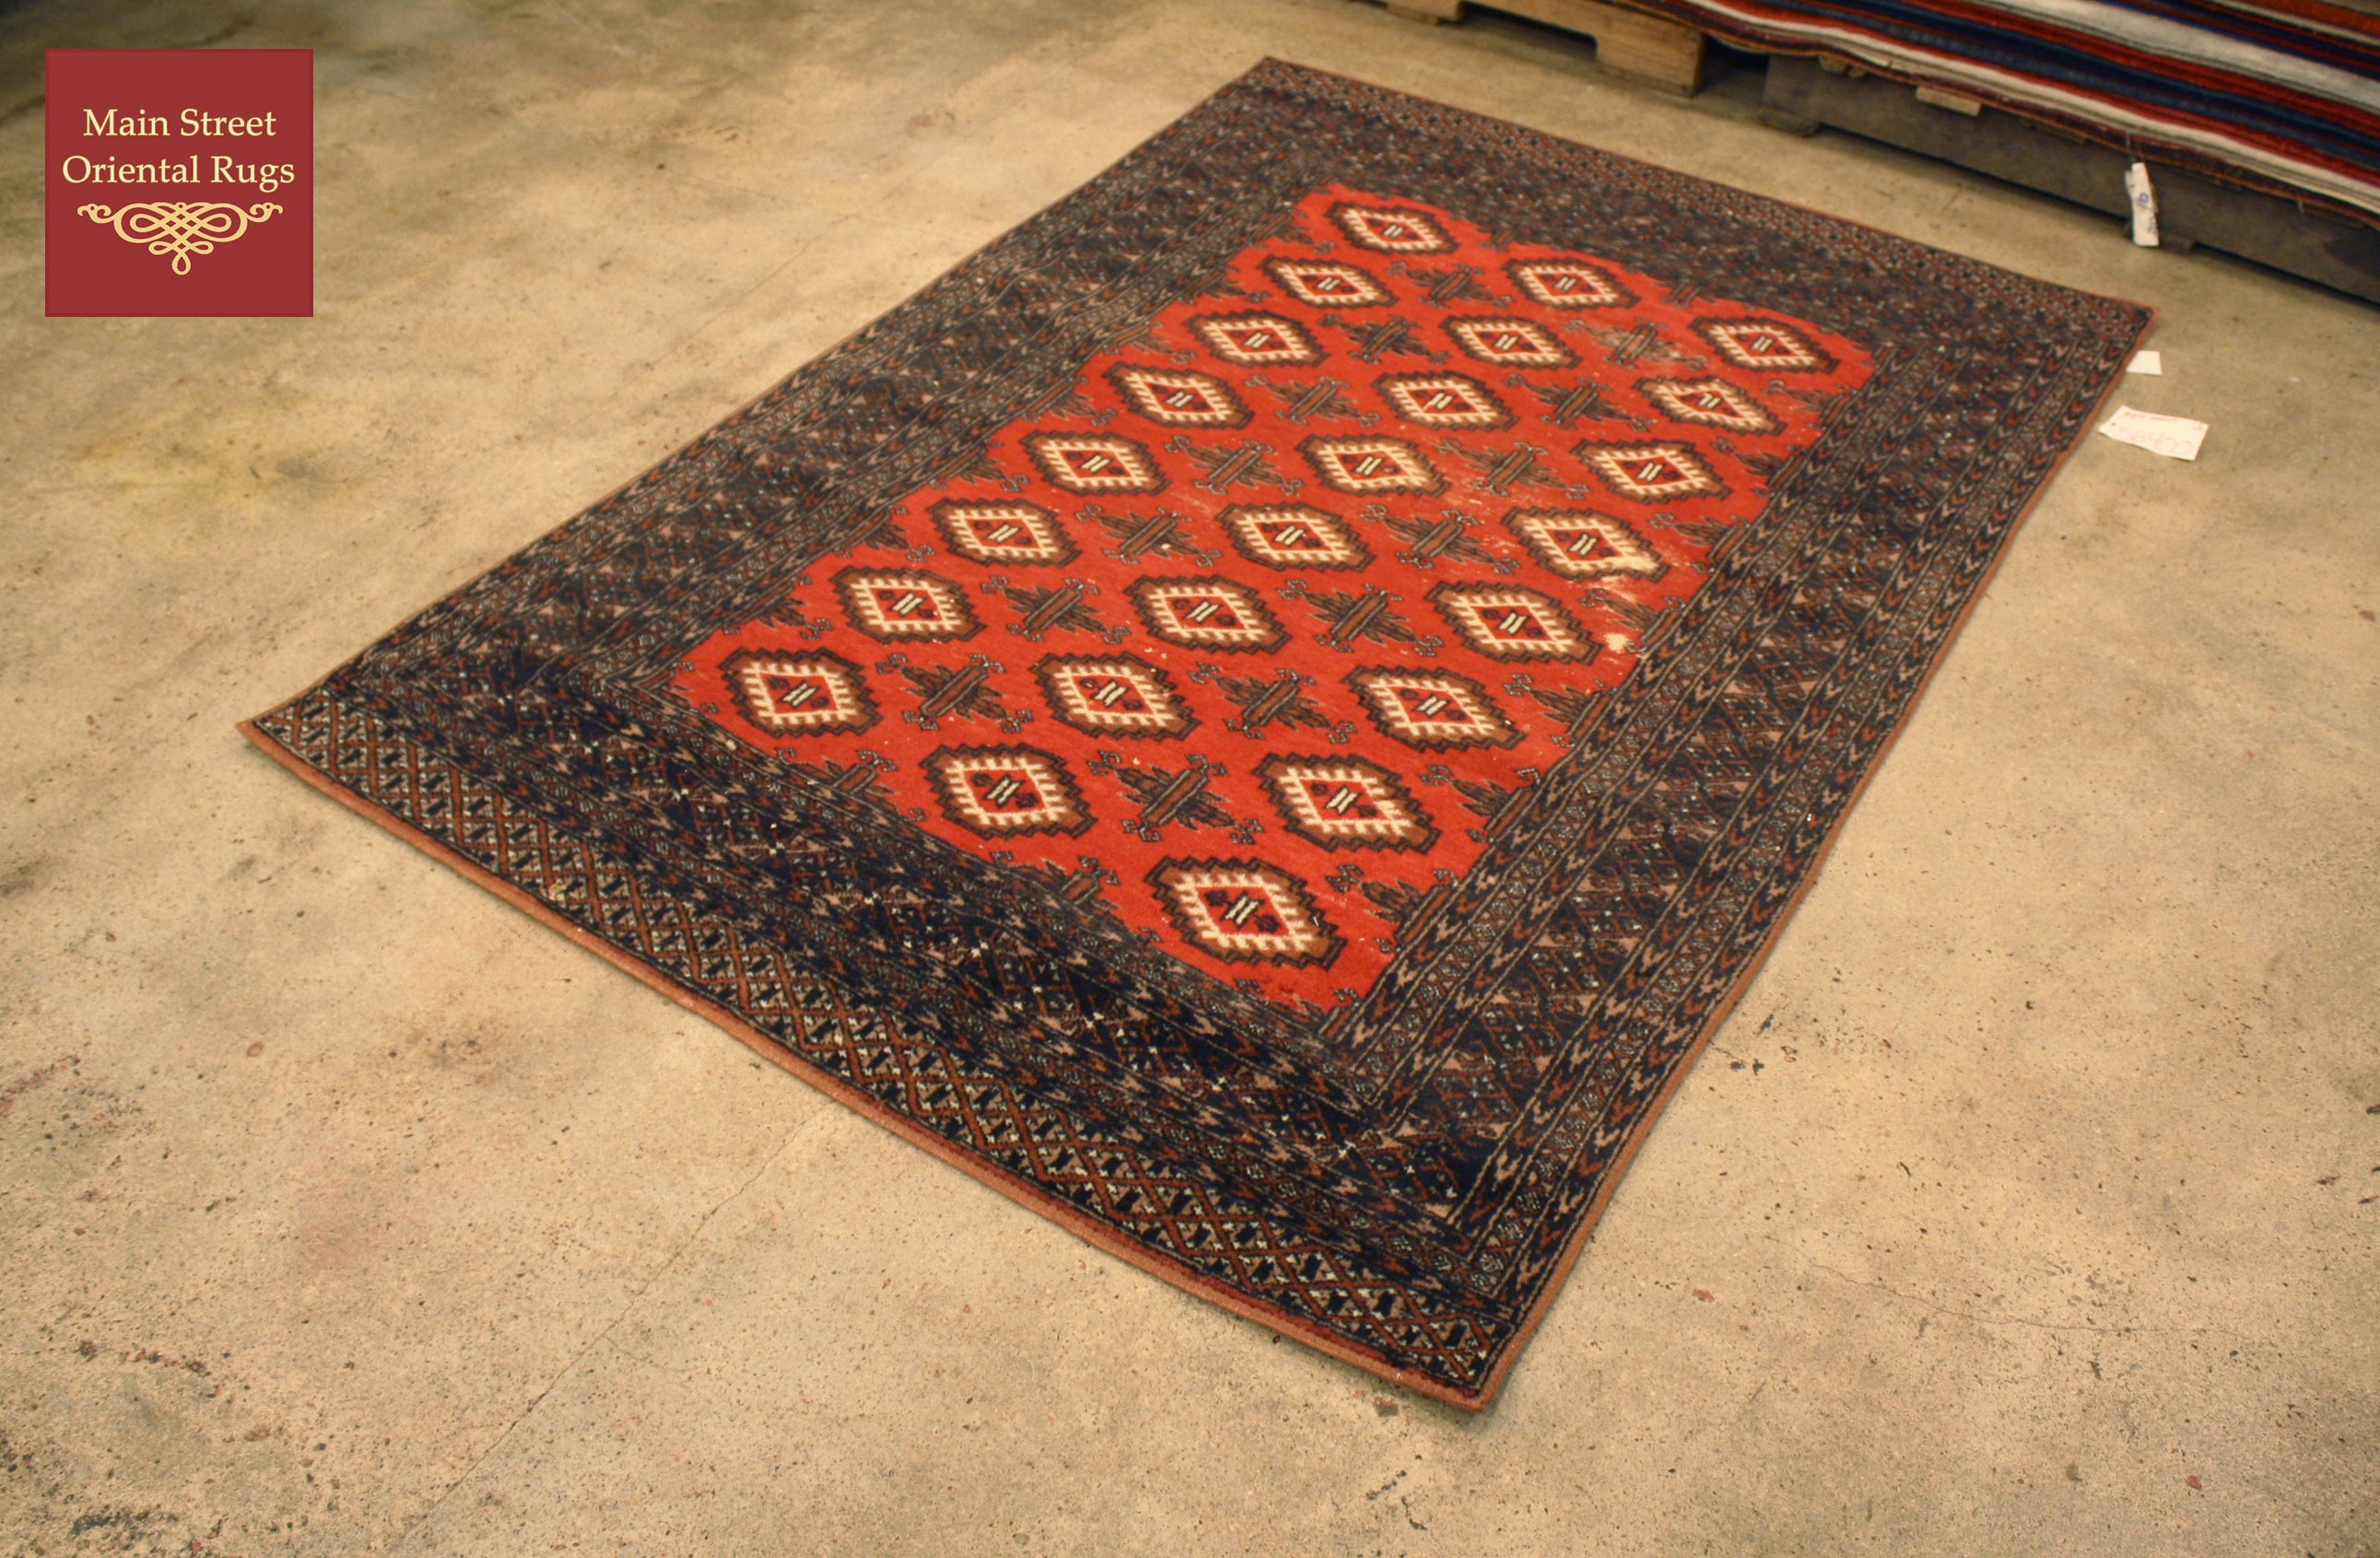 Vintage rug repair